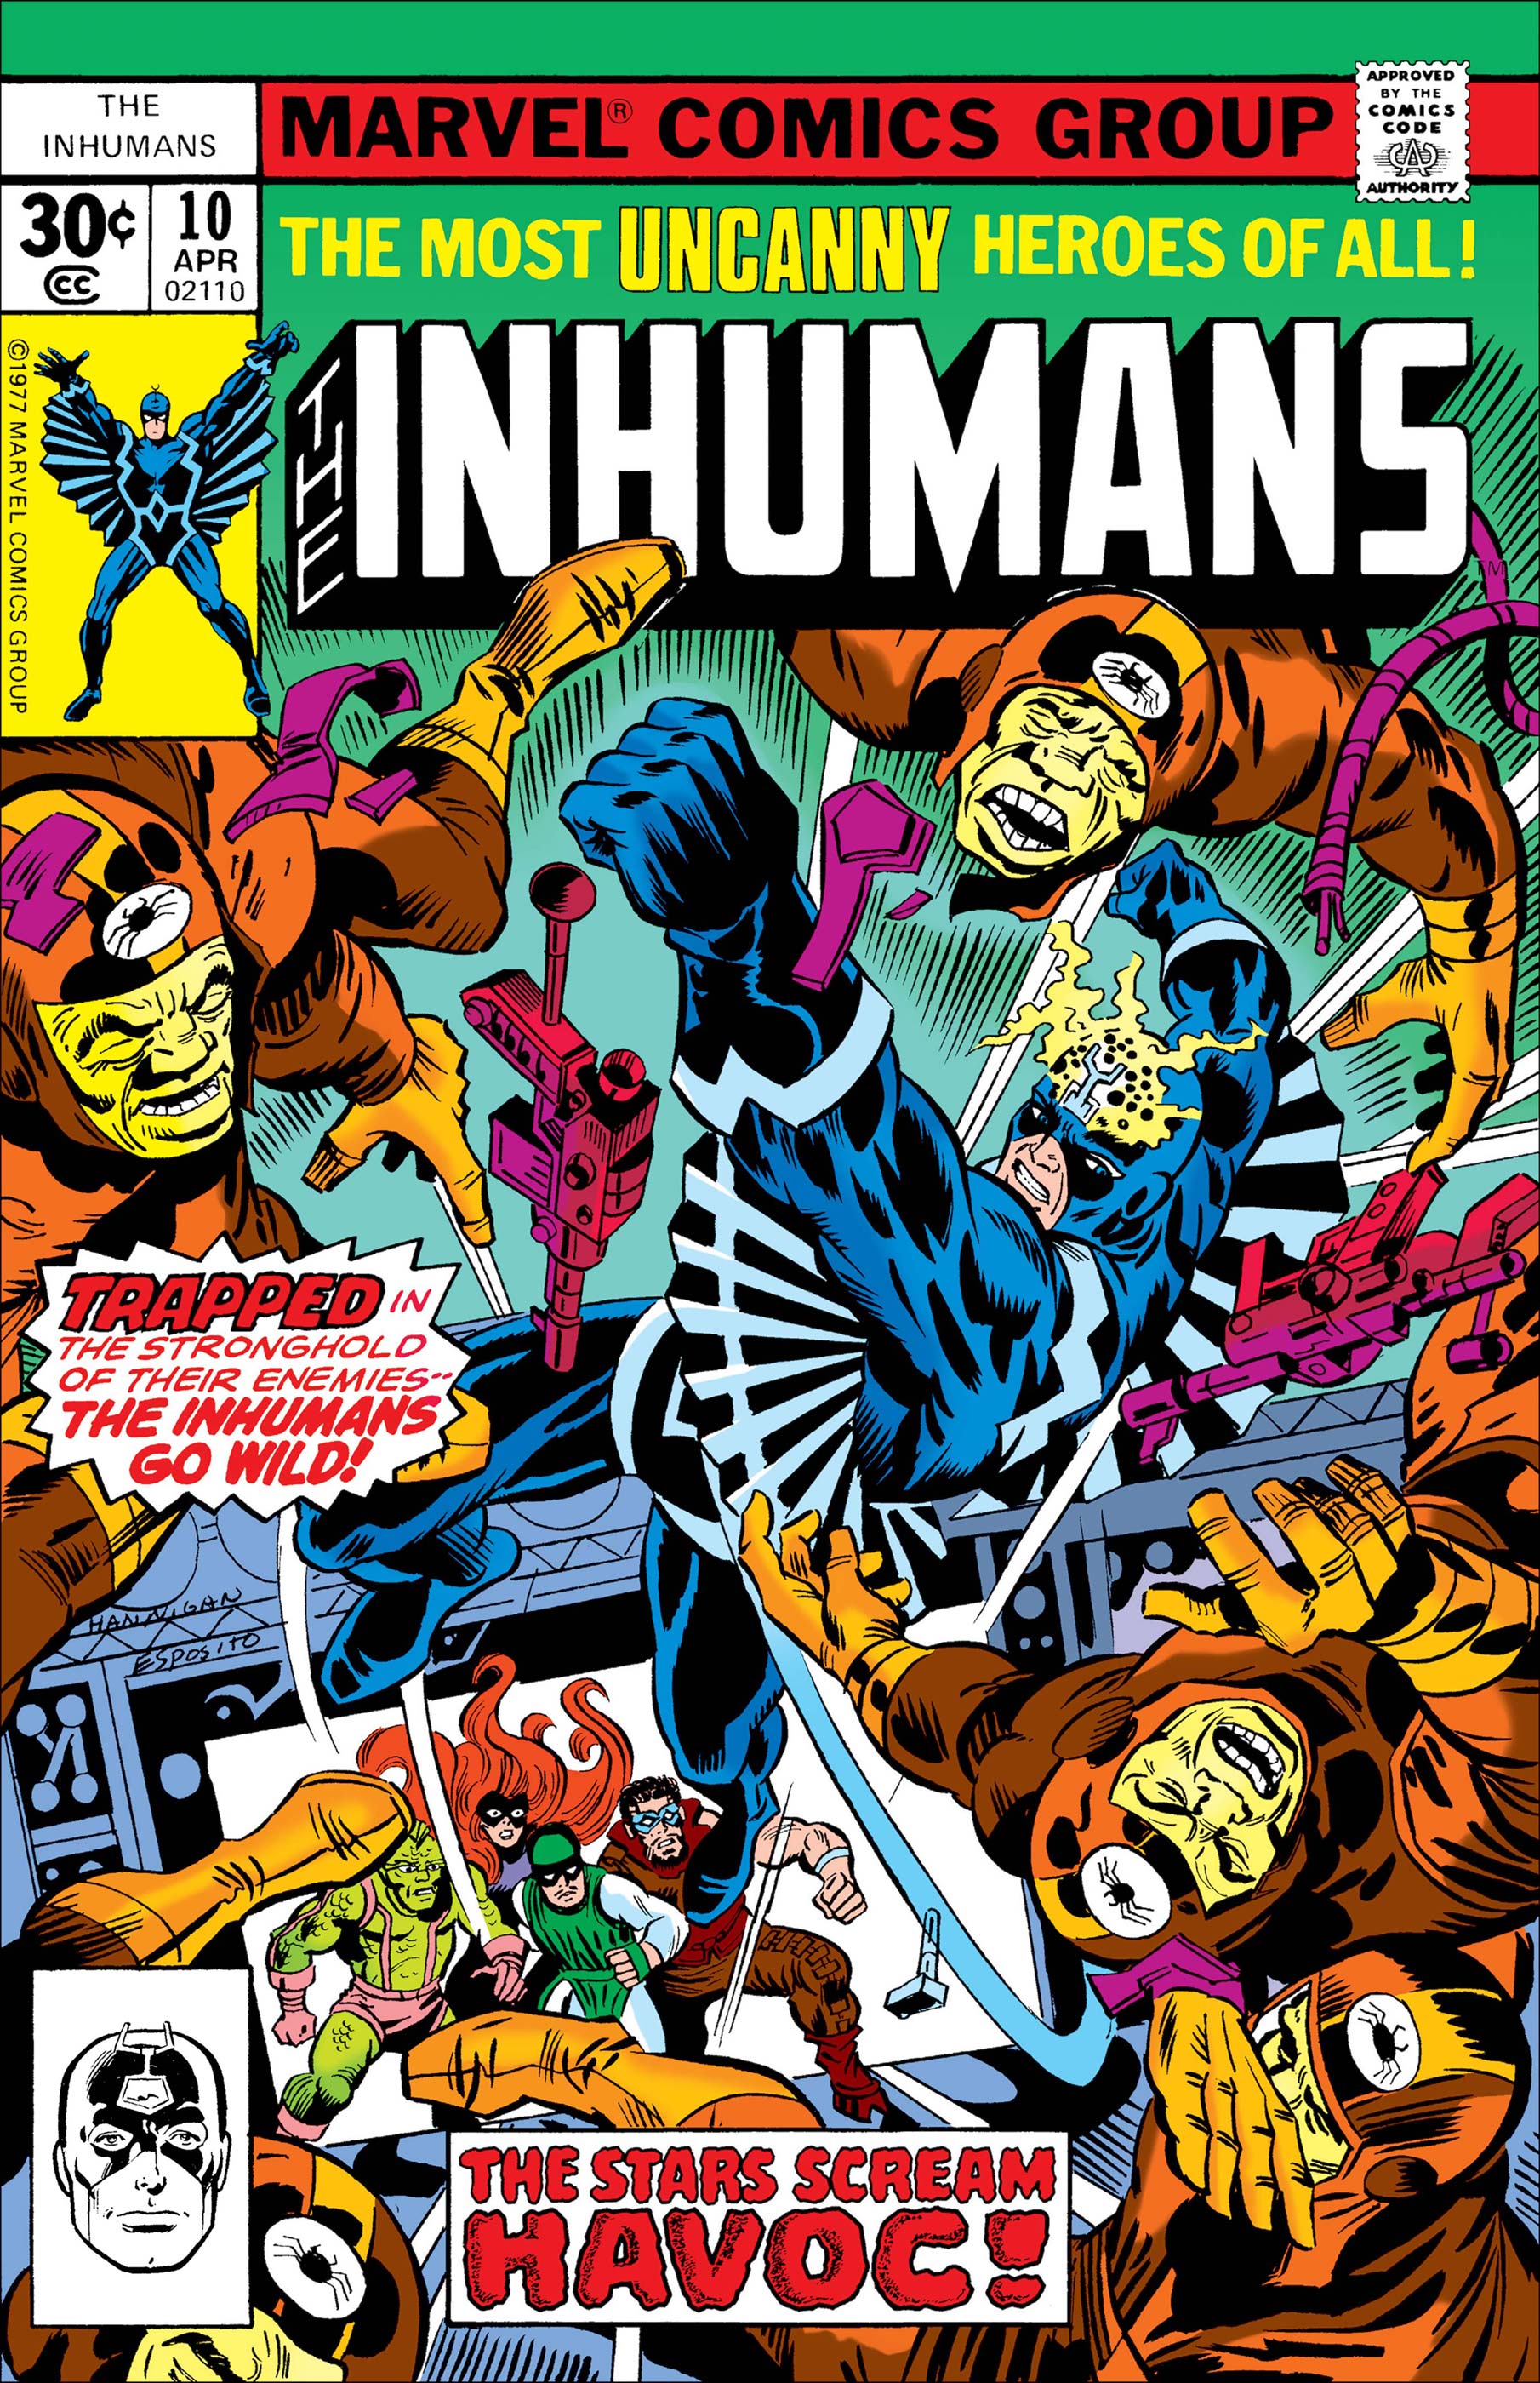 Inhumans (1975) #10